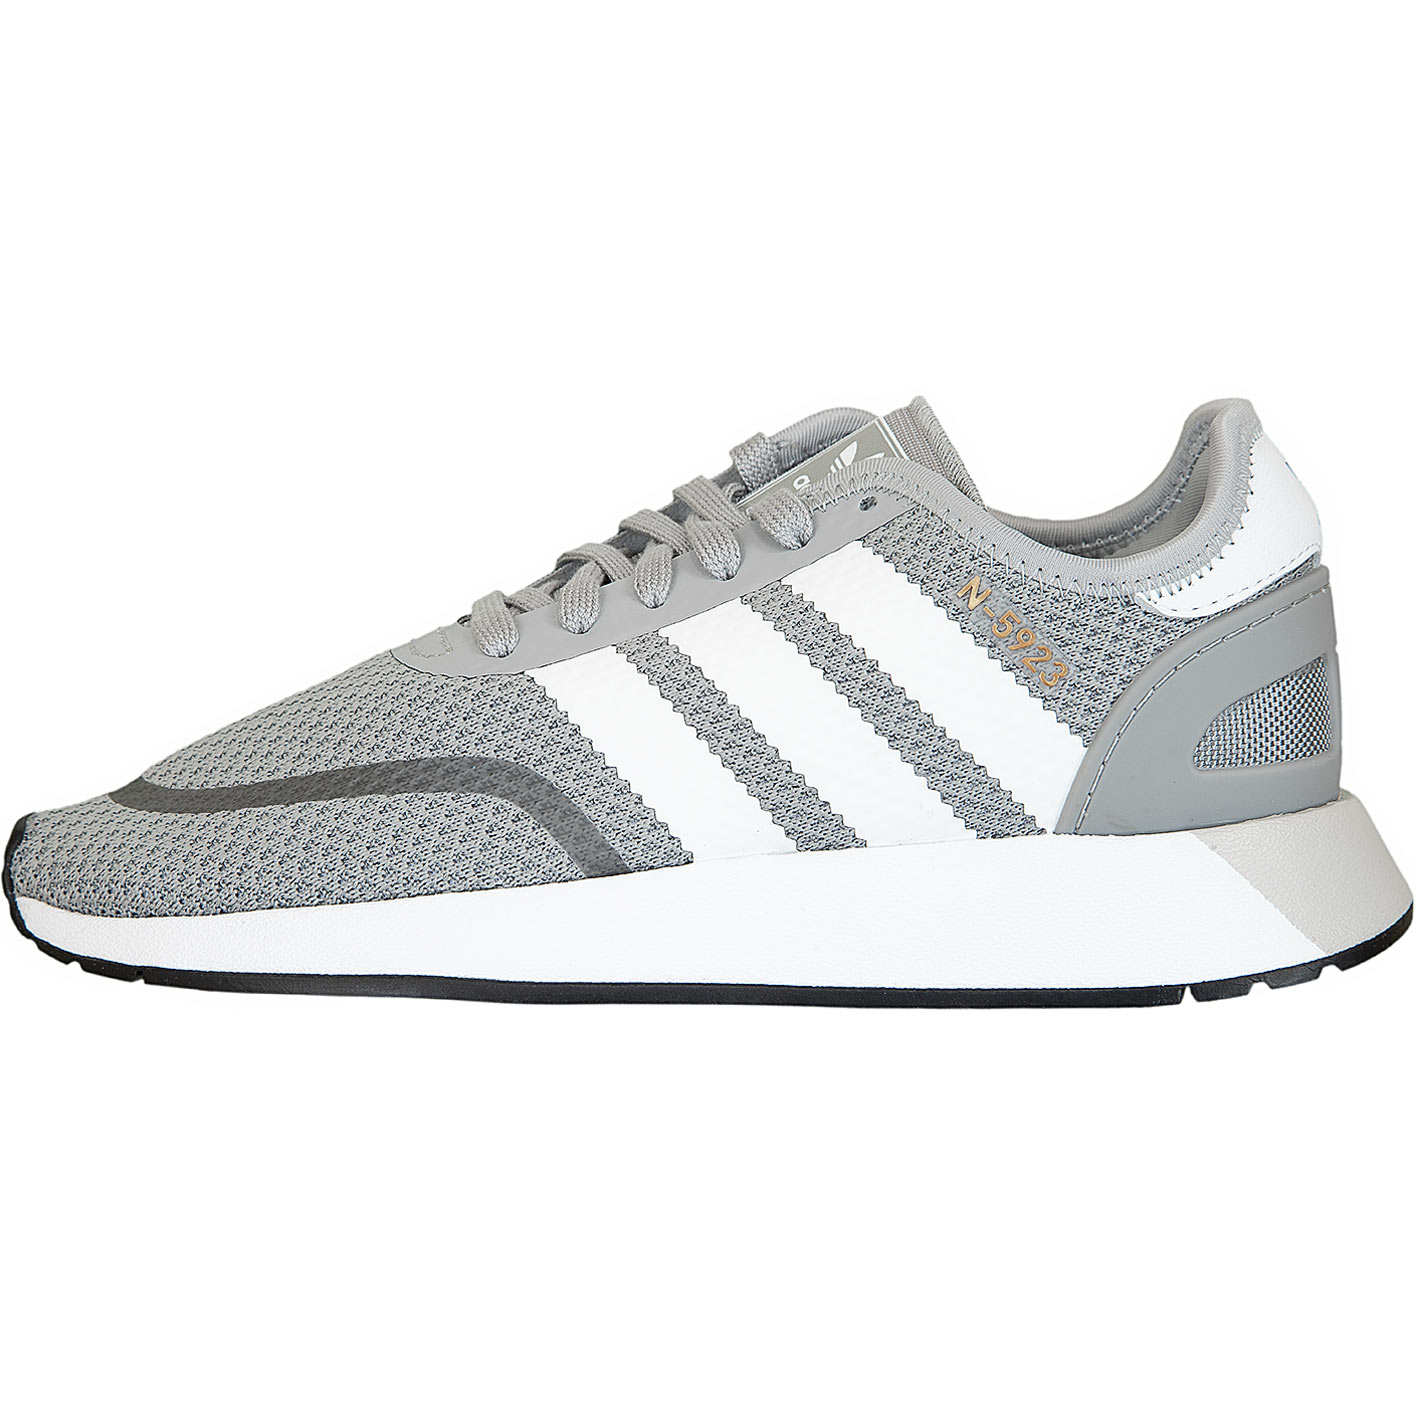 ☆ Adidas Originals Sneaker N-5923 grau/weiß/schwarz - hier bestellen!